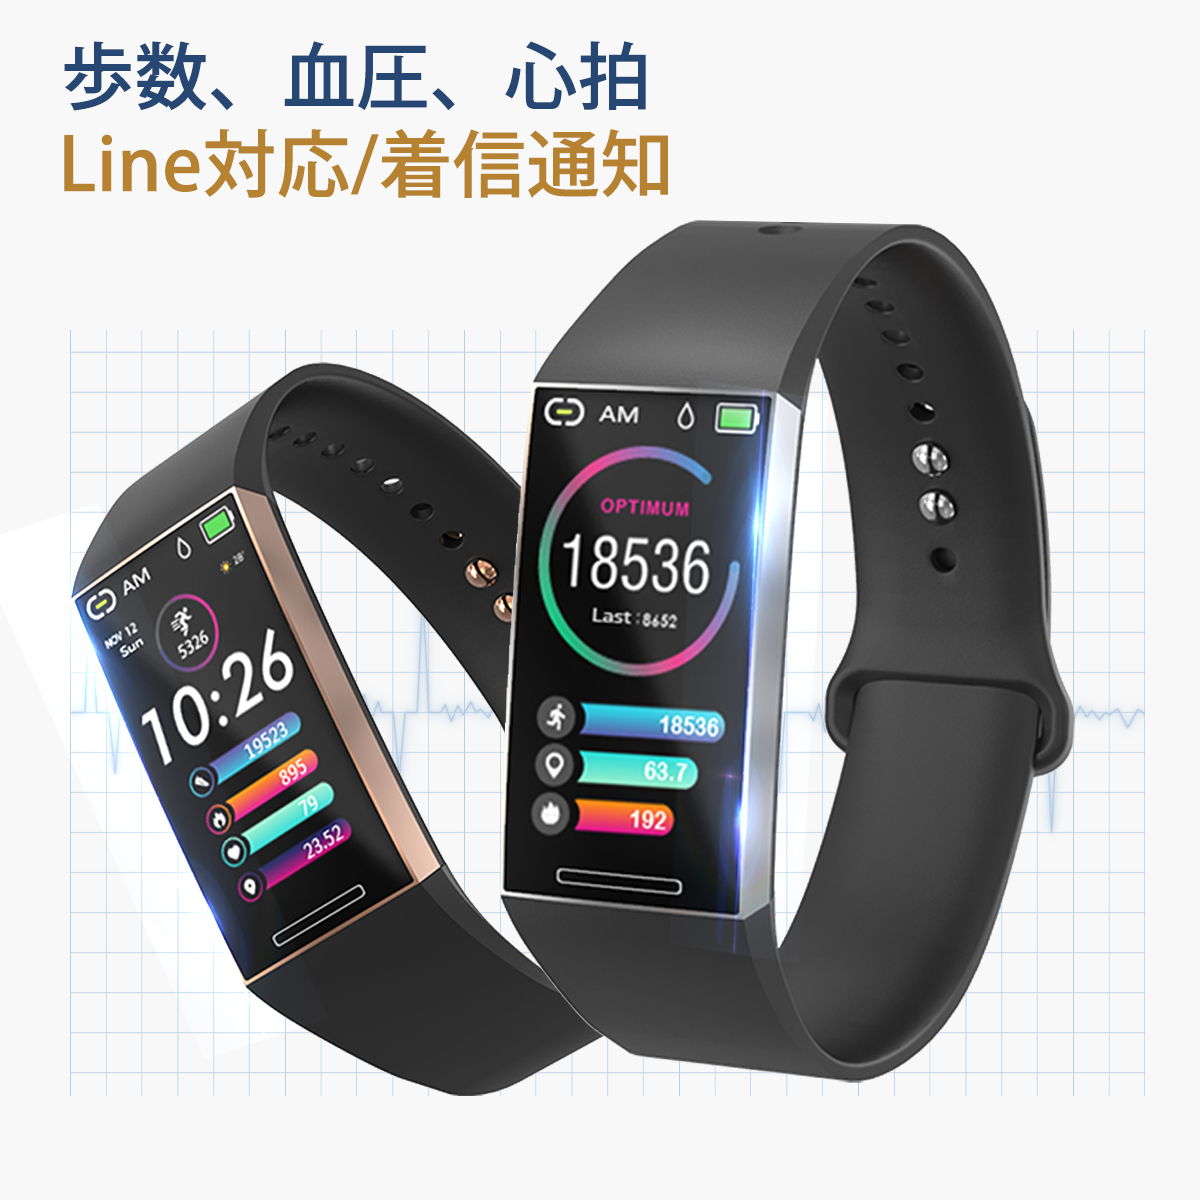 スマートウォッチ iphone 対応 android 対応 line 対応 活動量計 心拍計 血圧計 IP67防水 腕時計 レデ - ウインドウを閉じる